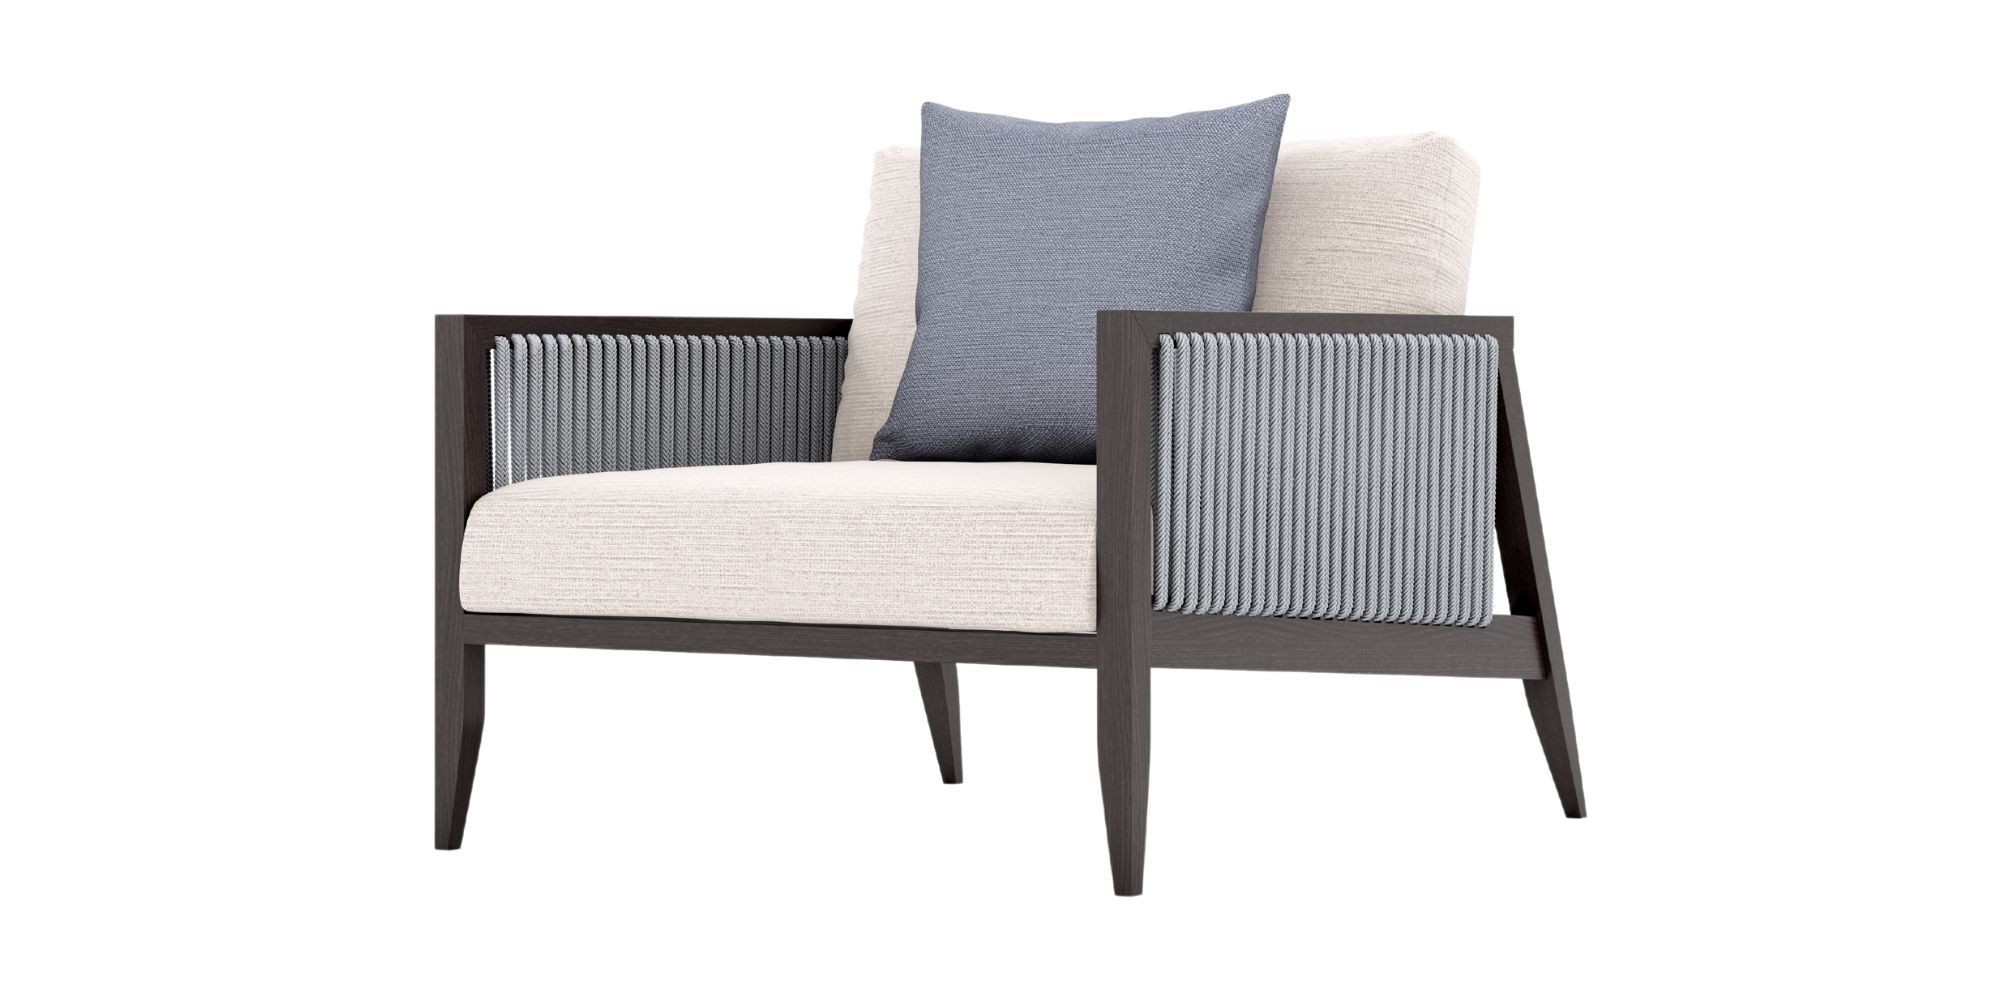 Coronet Centre Sofa Section in Outdoor Modular Sofas for Coronet collection